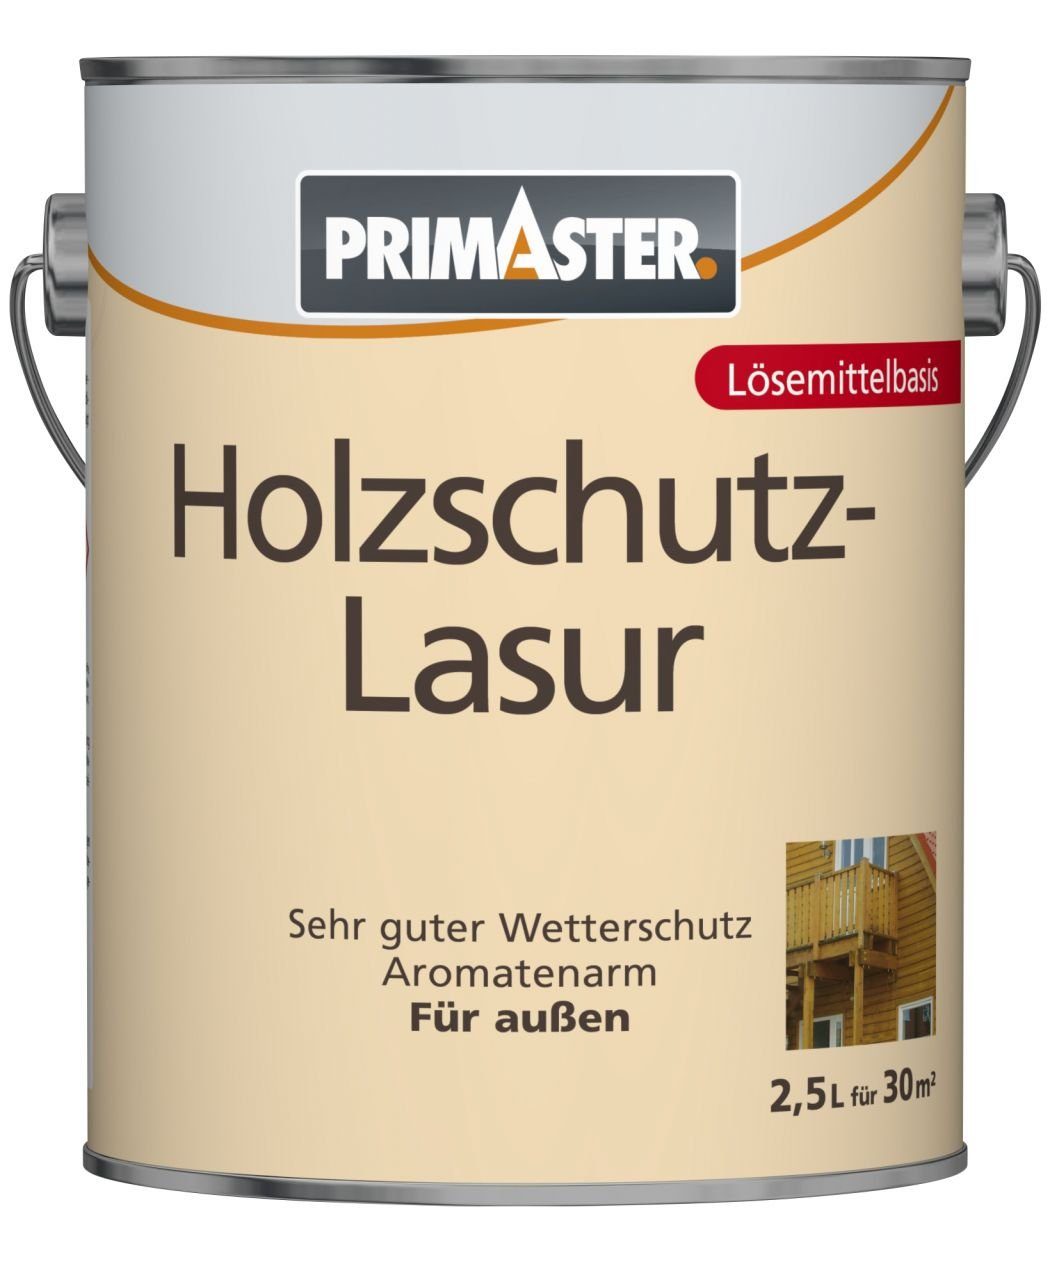 Holzschutzlasur Primaster Primaster Lasur nussbaum 2,5 L